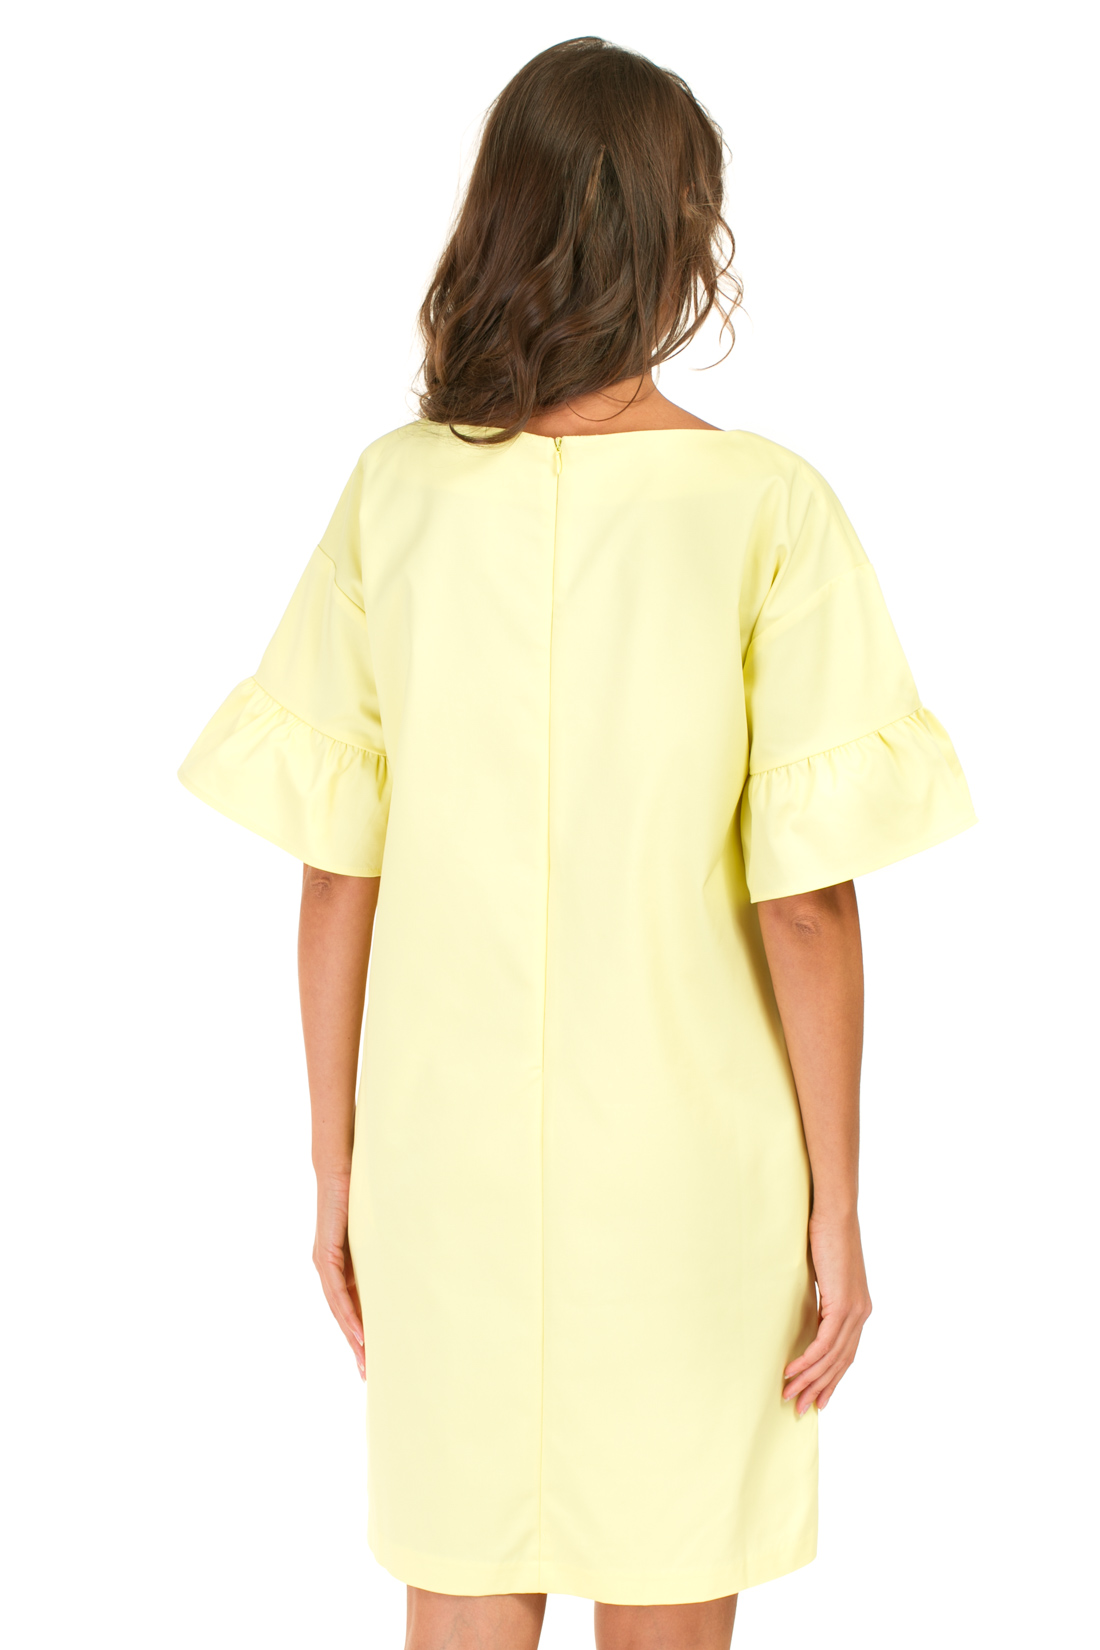 Платье с рукавами-воланами (арт. baon B457043), размер L, цвет желтый Платье с рукавами-воланами (арт. baon B457043) - фото 2